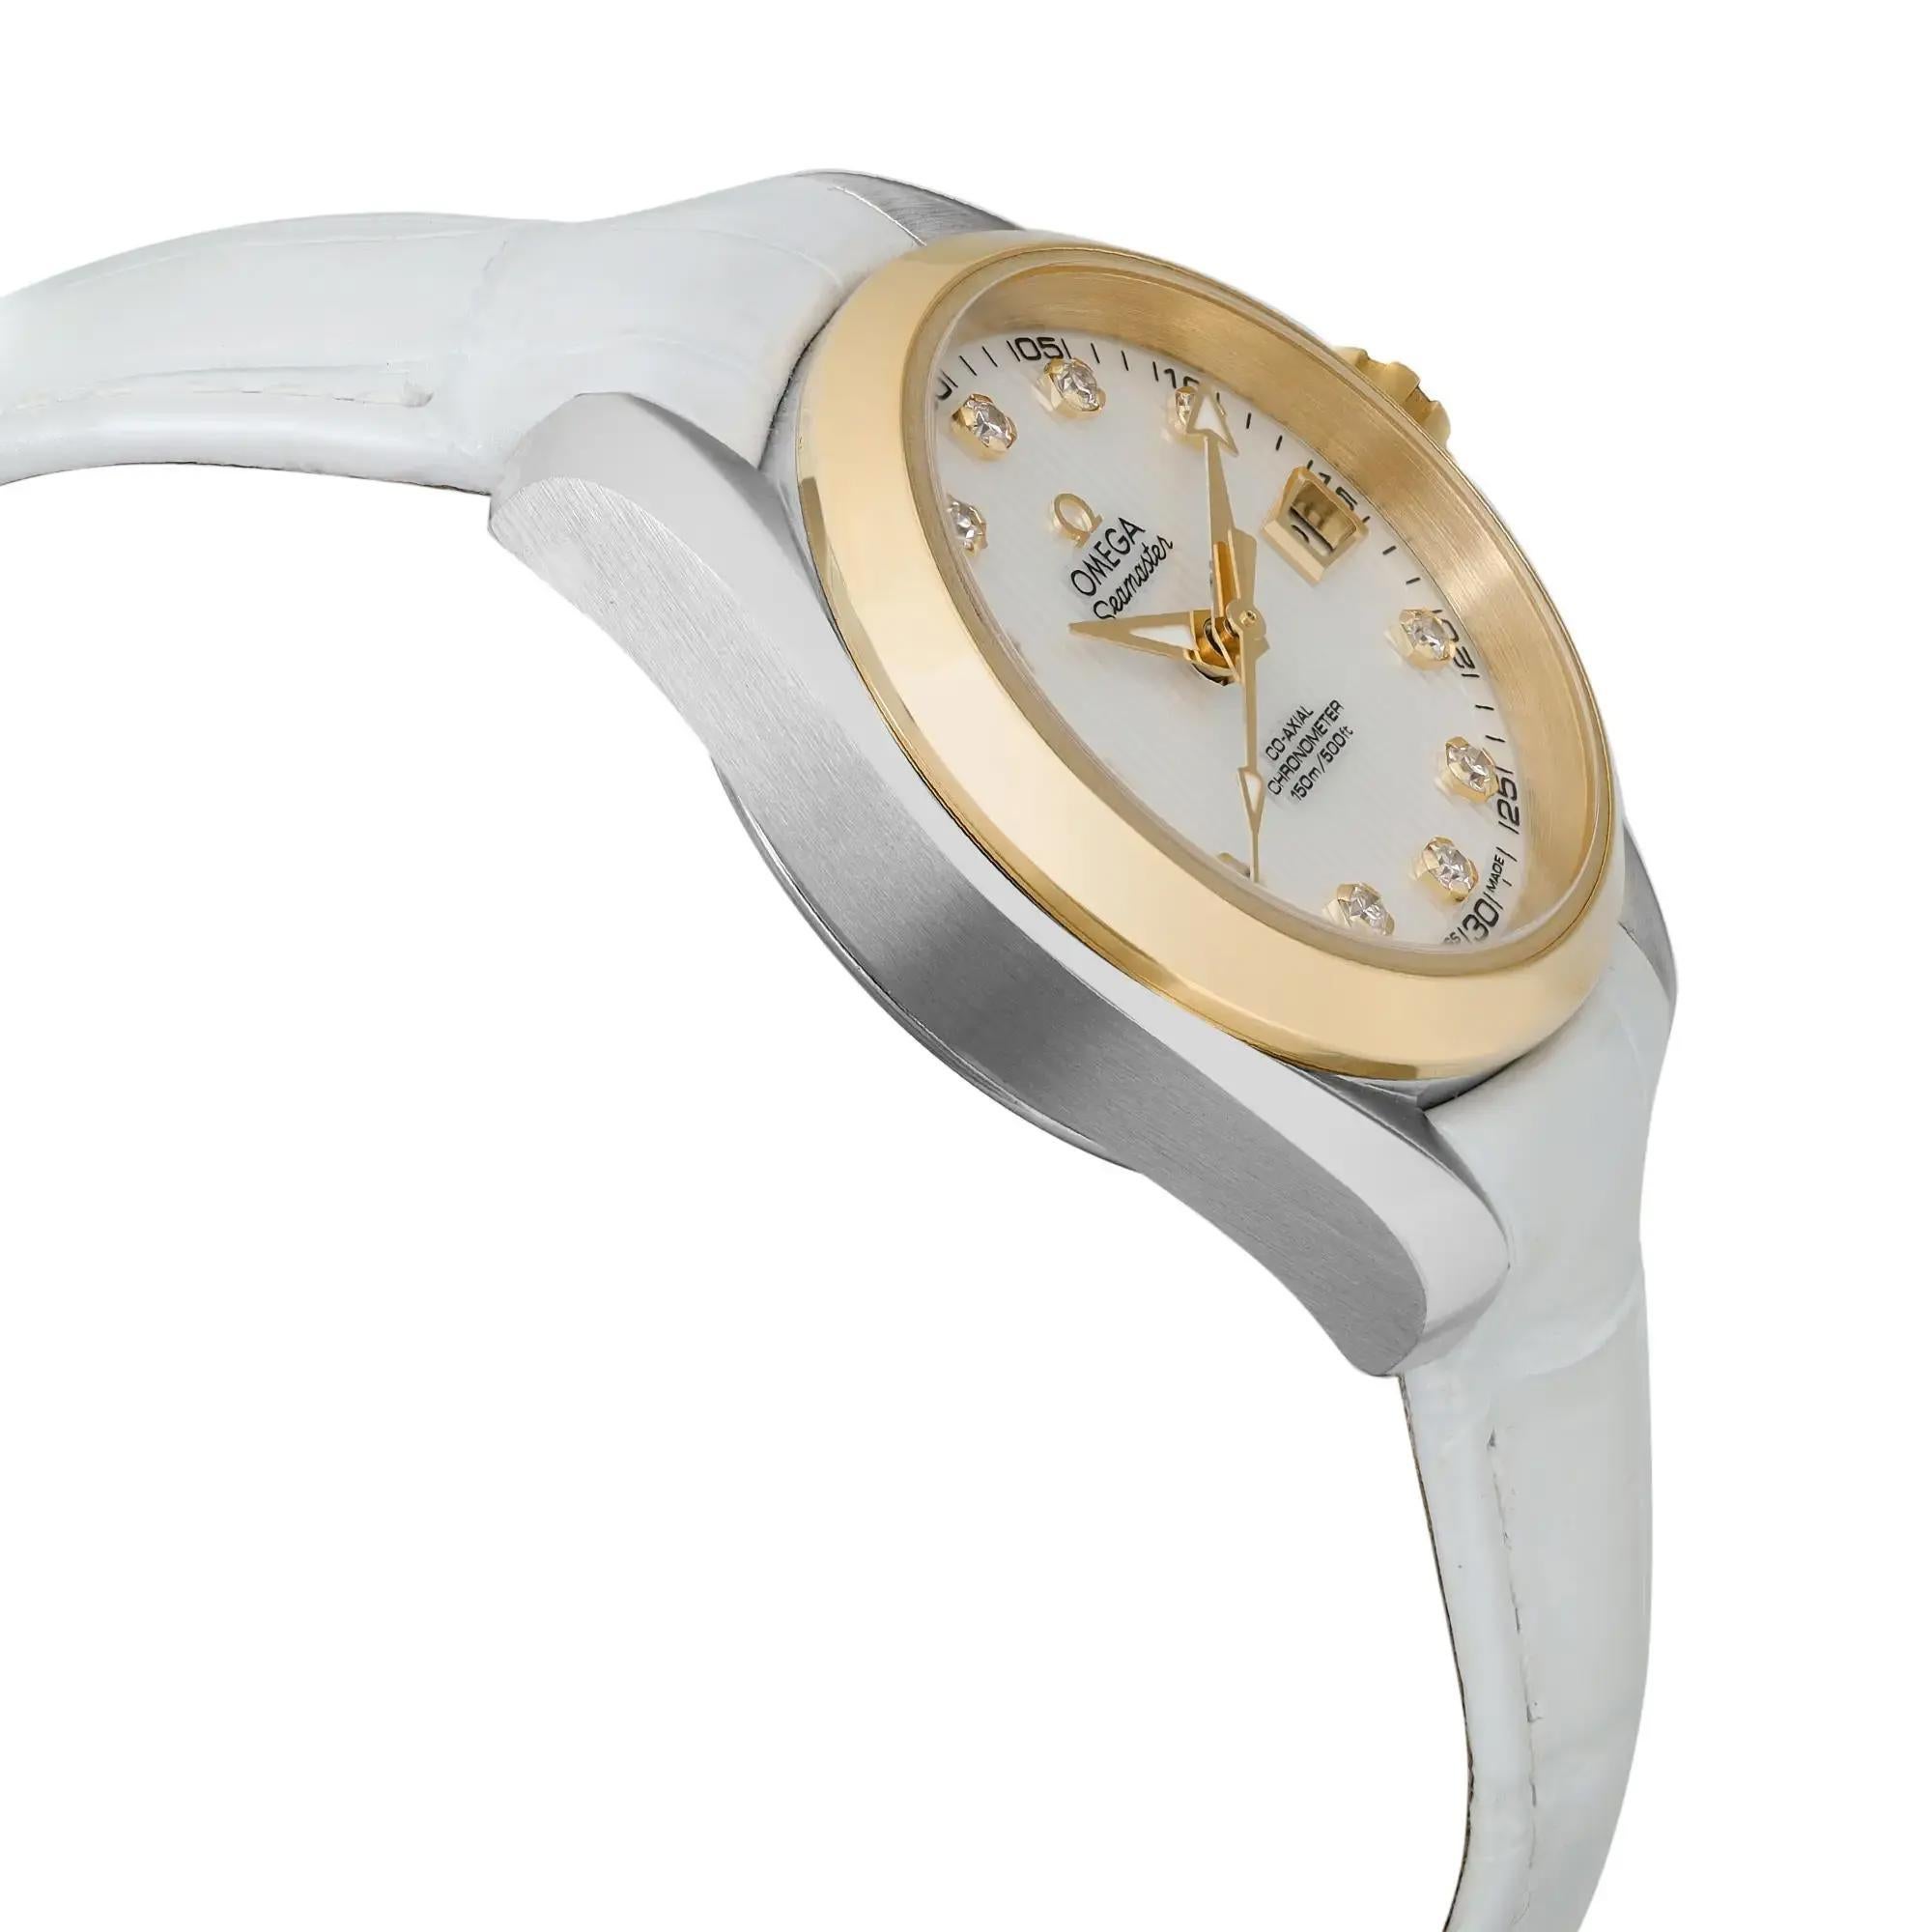  Omega Seamaster Aqua Terra Montre en or 18 carats avec cadran en diamants MOP 231,23.30.20.55.002 Pour femmes 